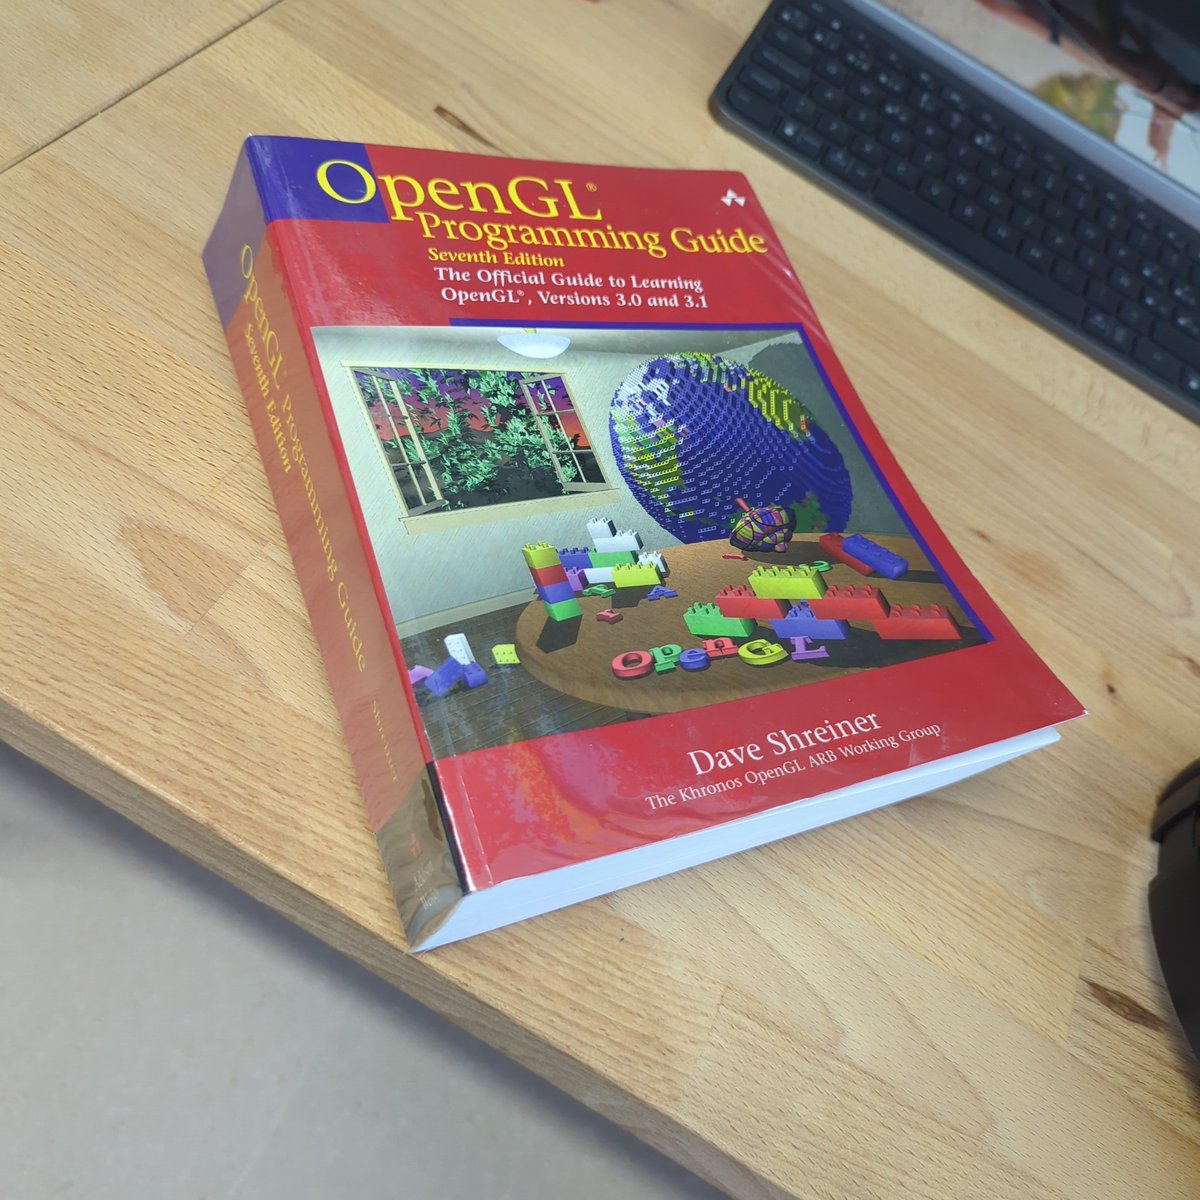 Me pregunto si podría sacar algo por el red book de OpenGL (7a edición). Está perfecto, sin uso ninguno.